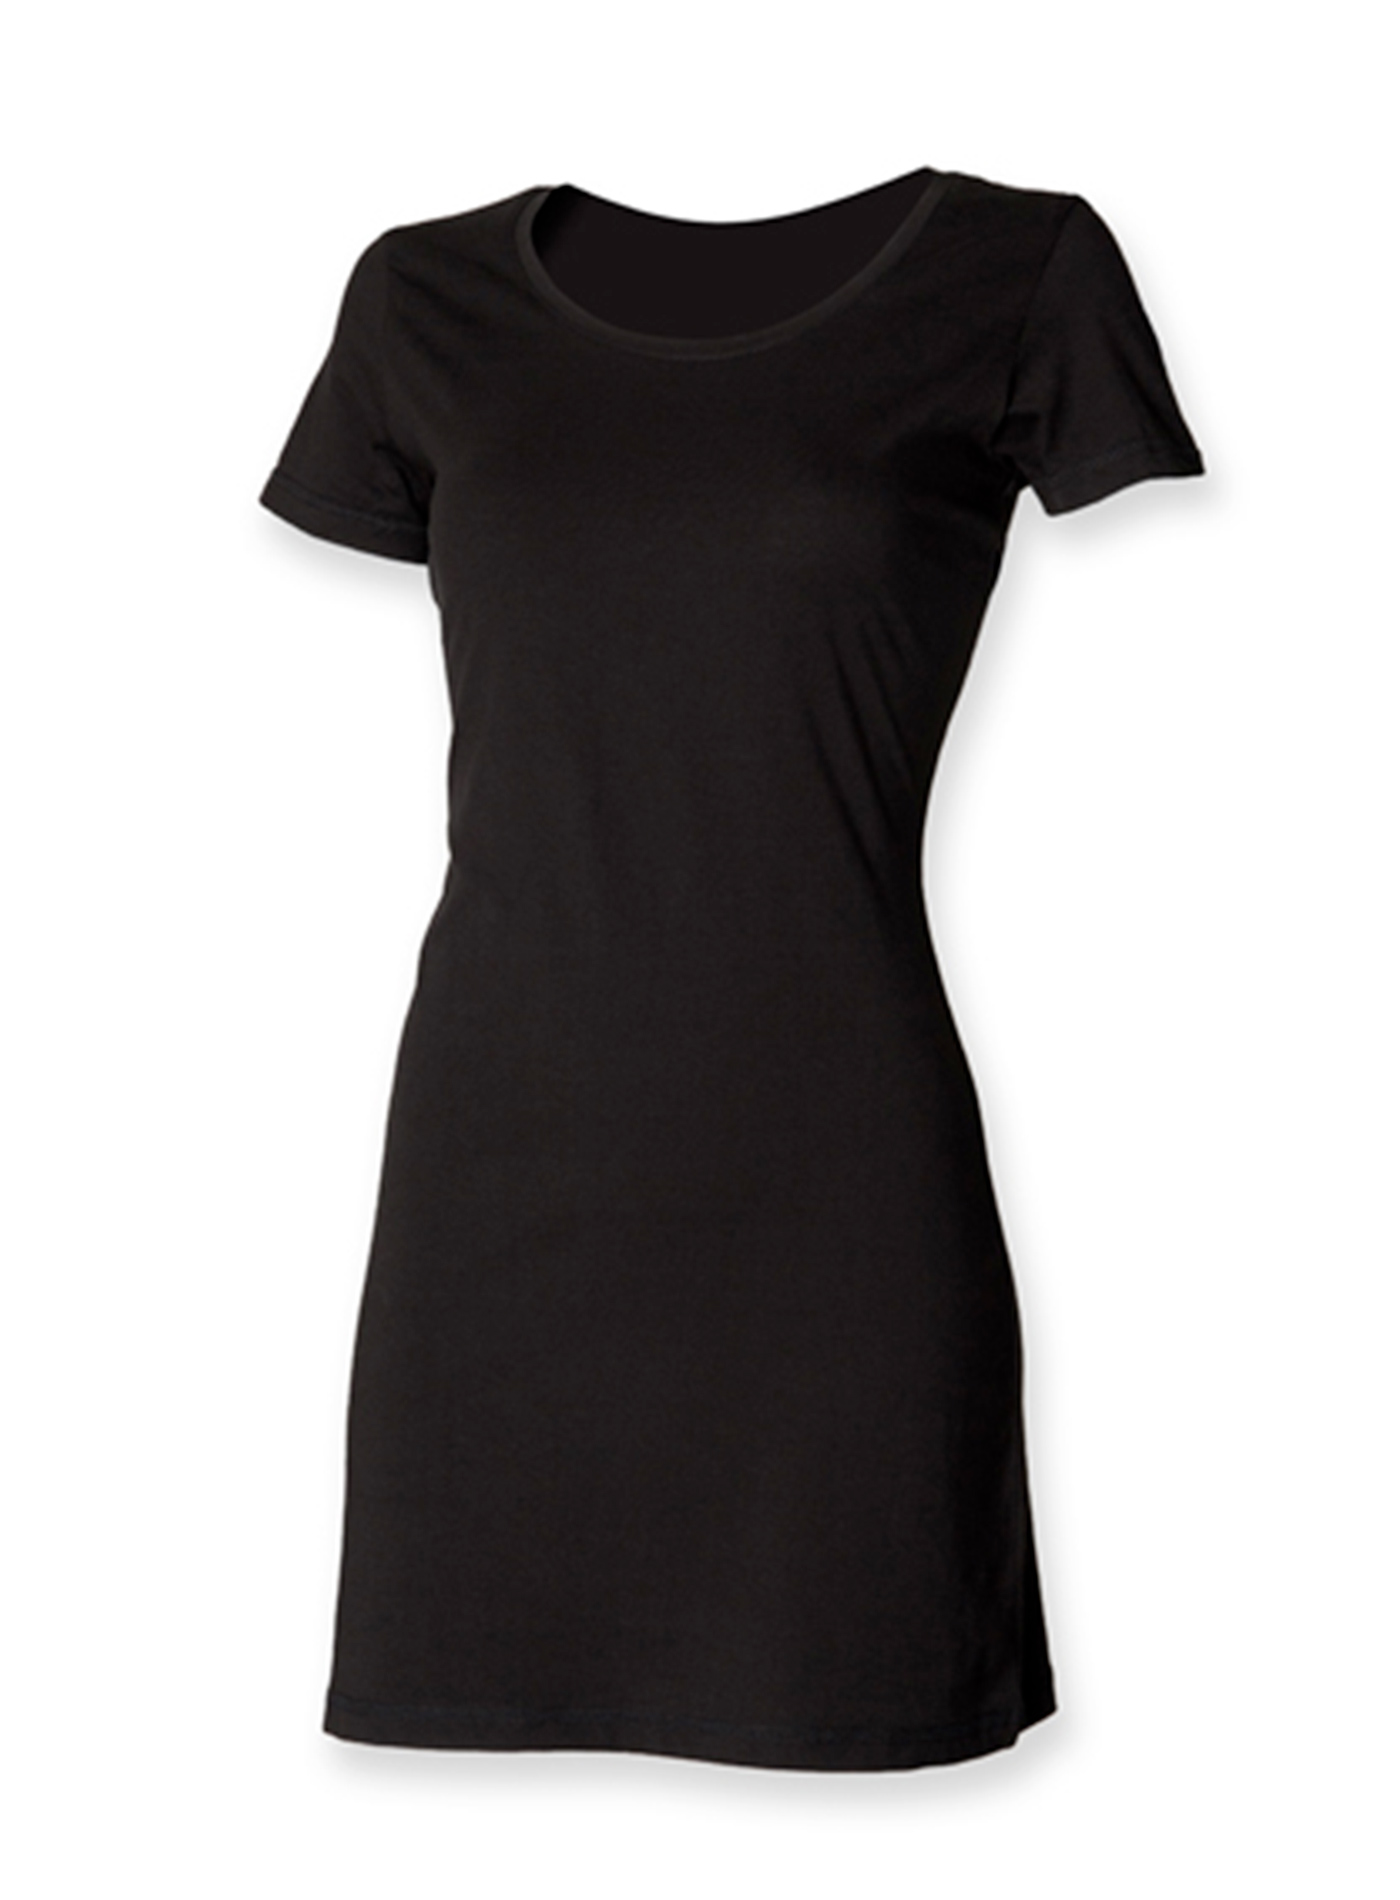 Dámské tričkové šaty Skinnifit - černá XL